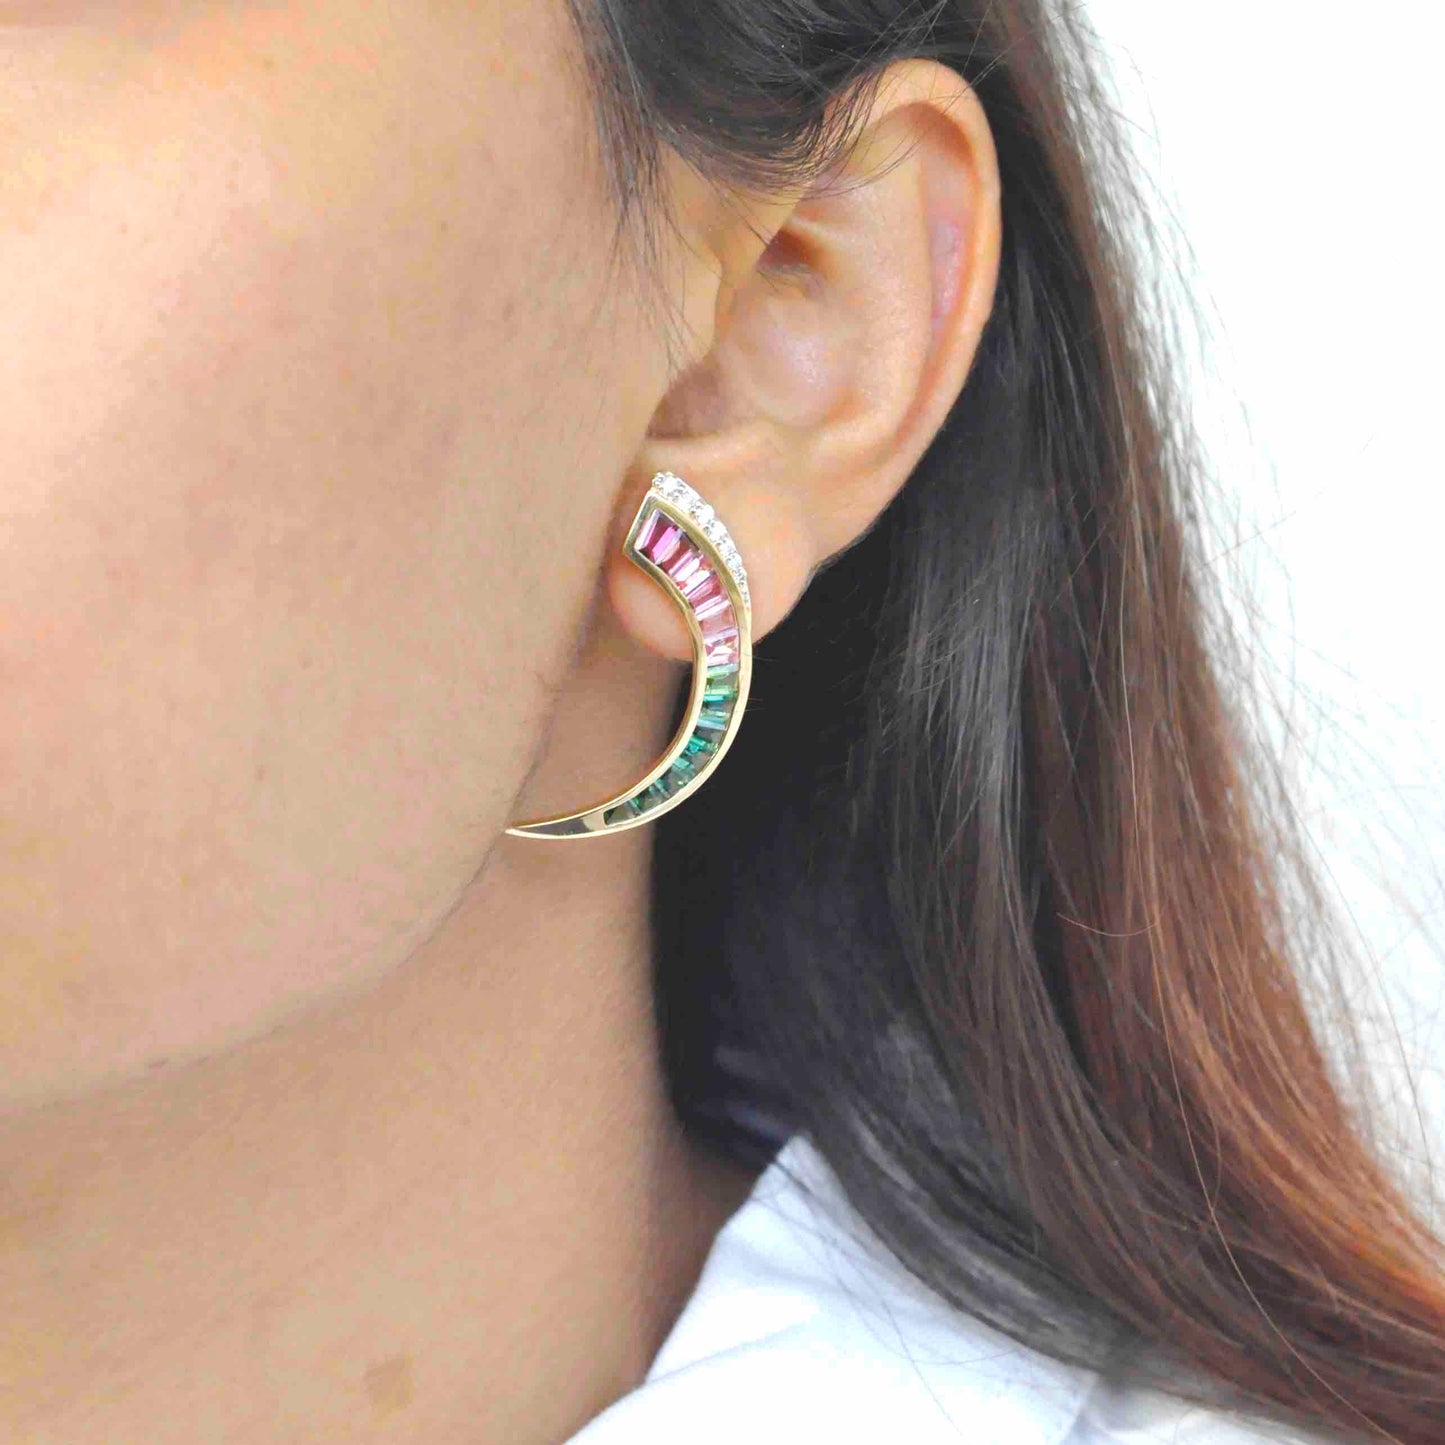 pink tourmaline earrings